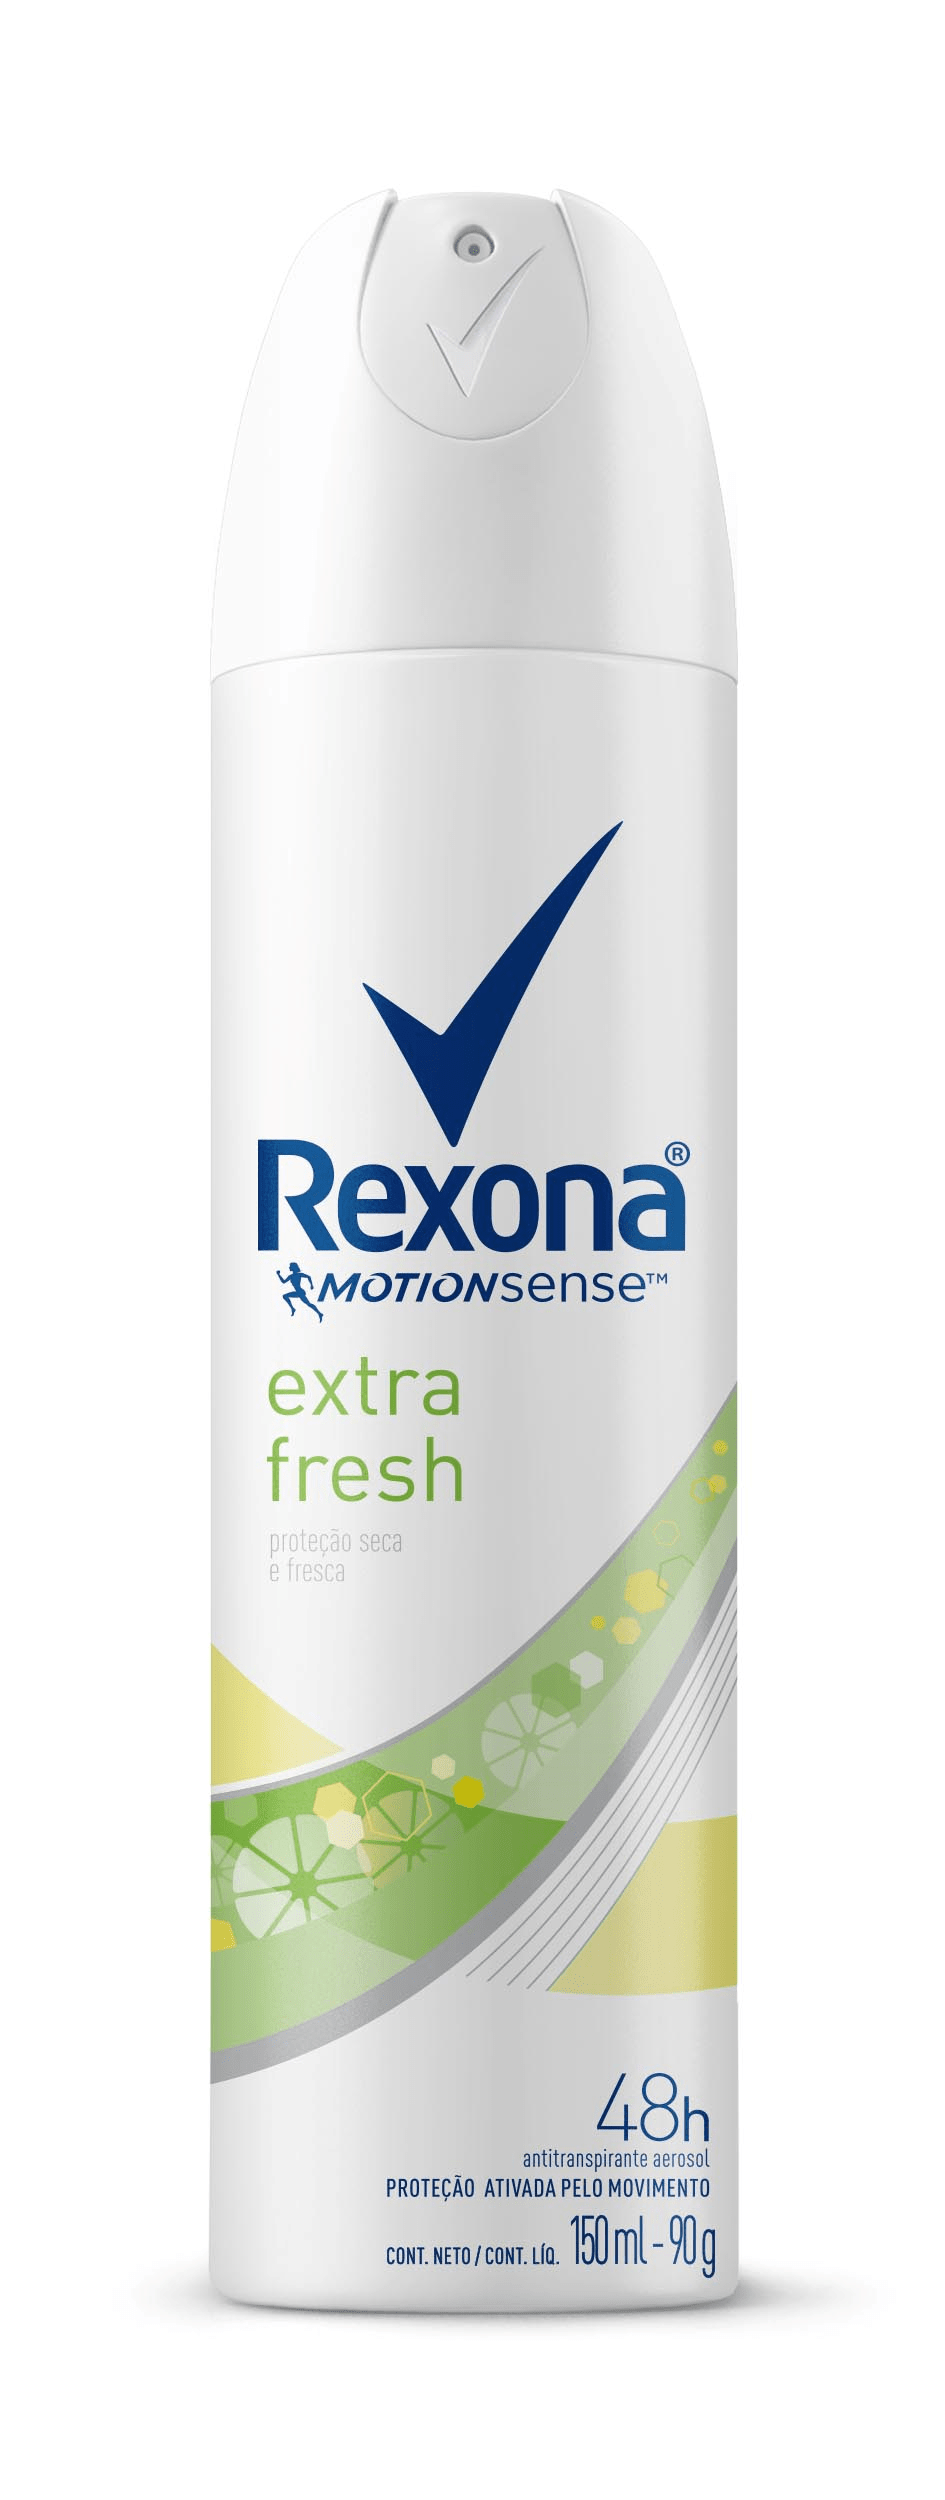 Desodorante Aerosol Rexona Feminimo Extra Fresh 90g